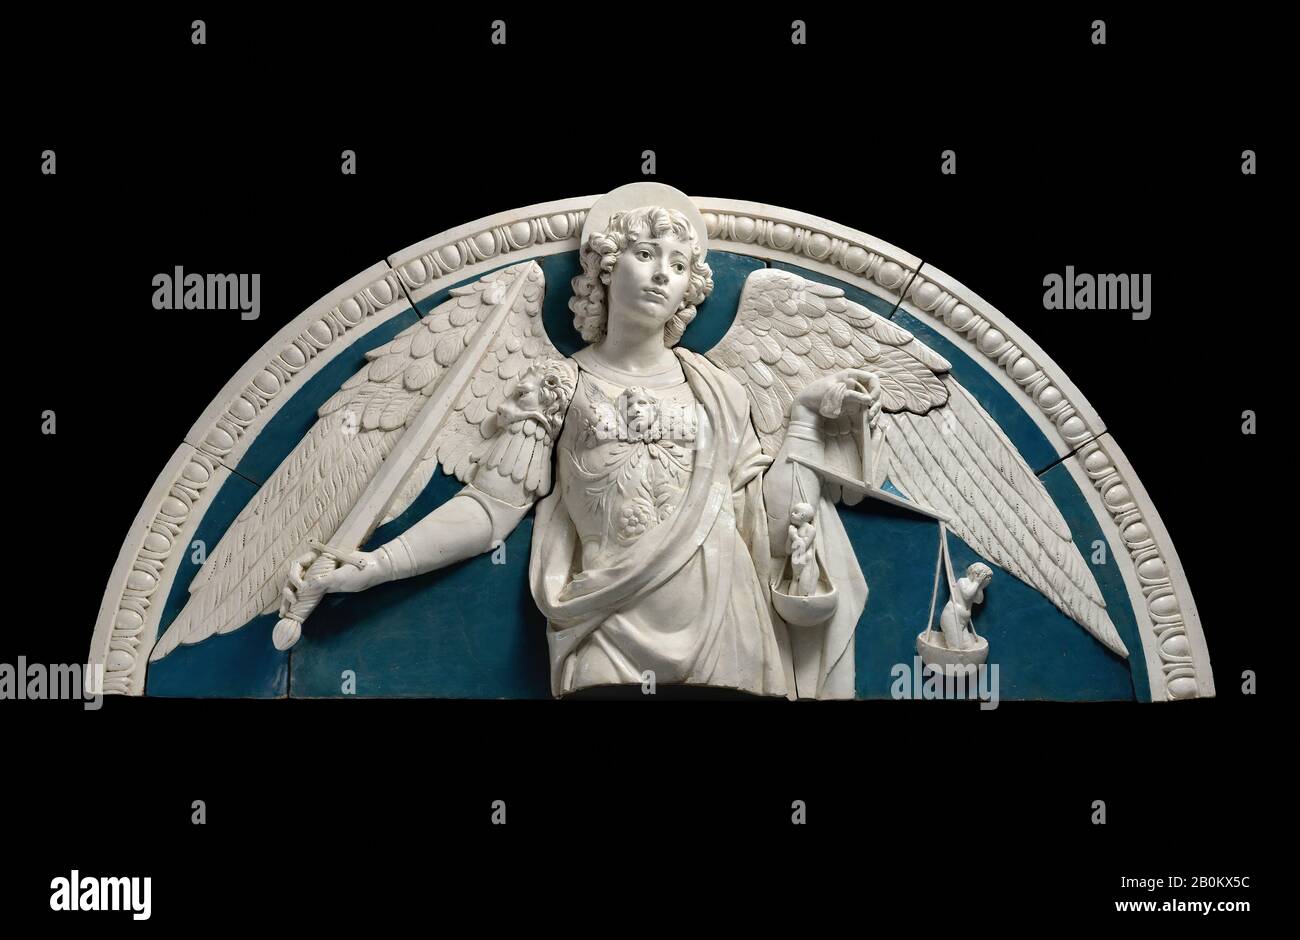 Andrea della Robbia, Saint Michael the Archangel, Italian, Florence, Andrea della Robbia (Italian, 1435–1525), ca. 1475, Italian, Florence, Glazed terracotta, Overall: 31 1/8 × 61 7/8 in., 217.7 lb. (79.1 × 157.2 cm, 98.7 kg), Sculpture Stock Photo